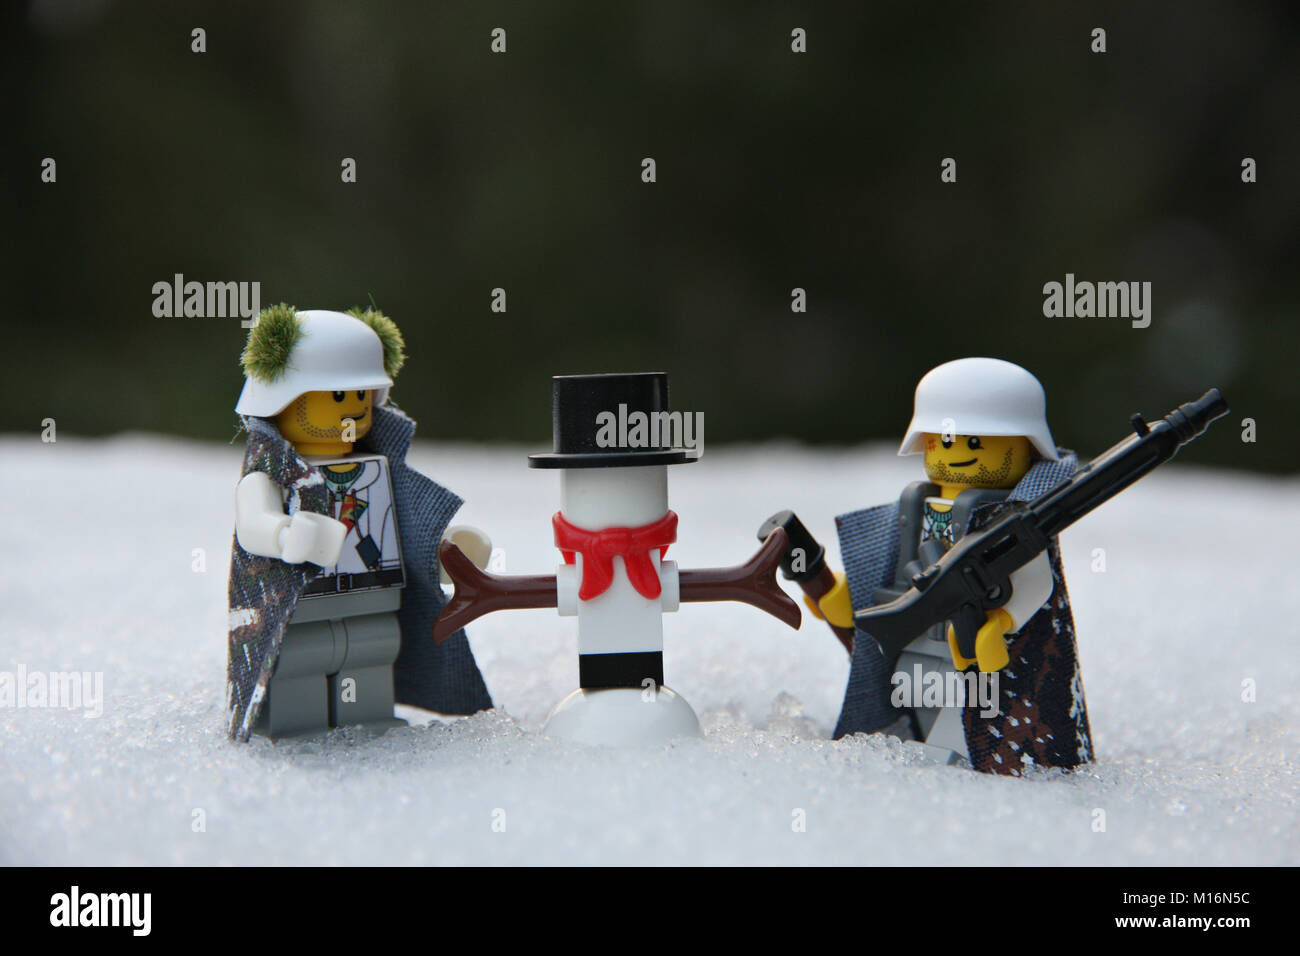 Lego Winter Stockfotos und -bilder Kaufen - Alamy